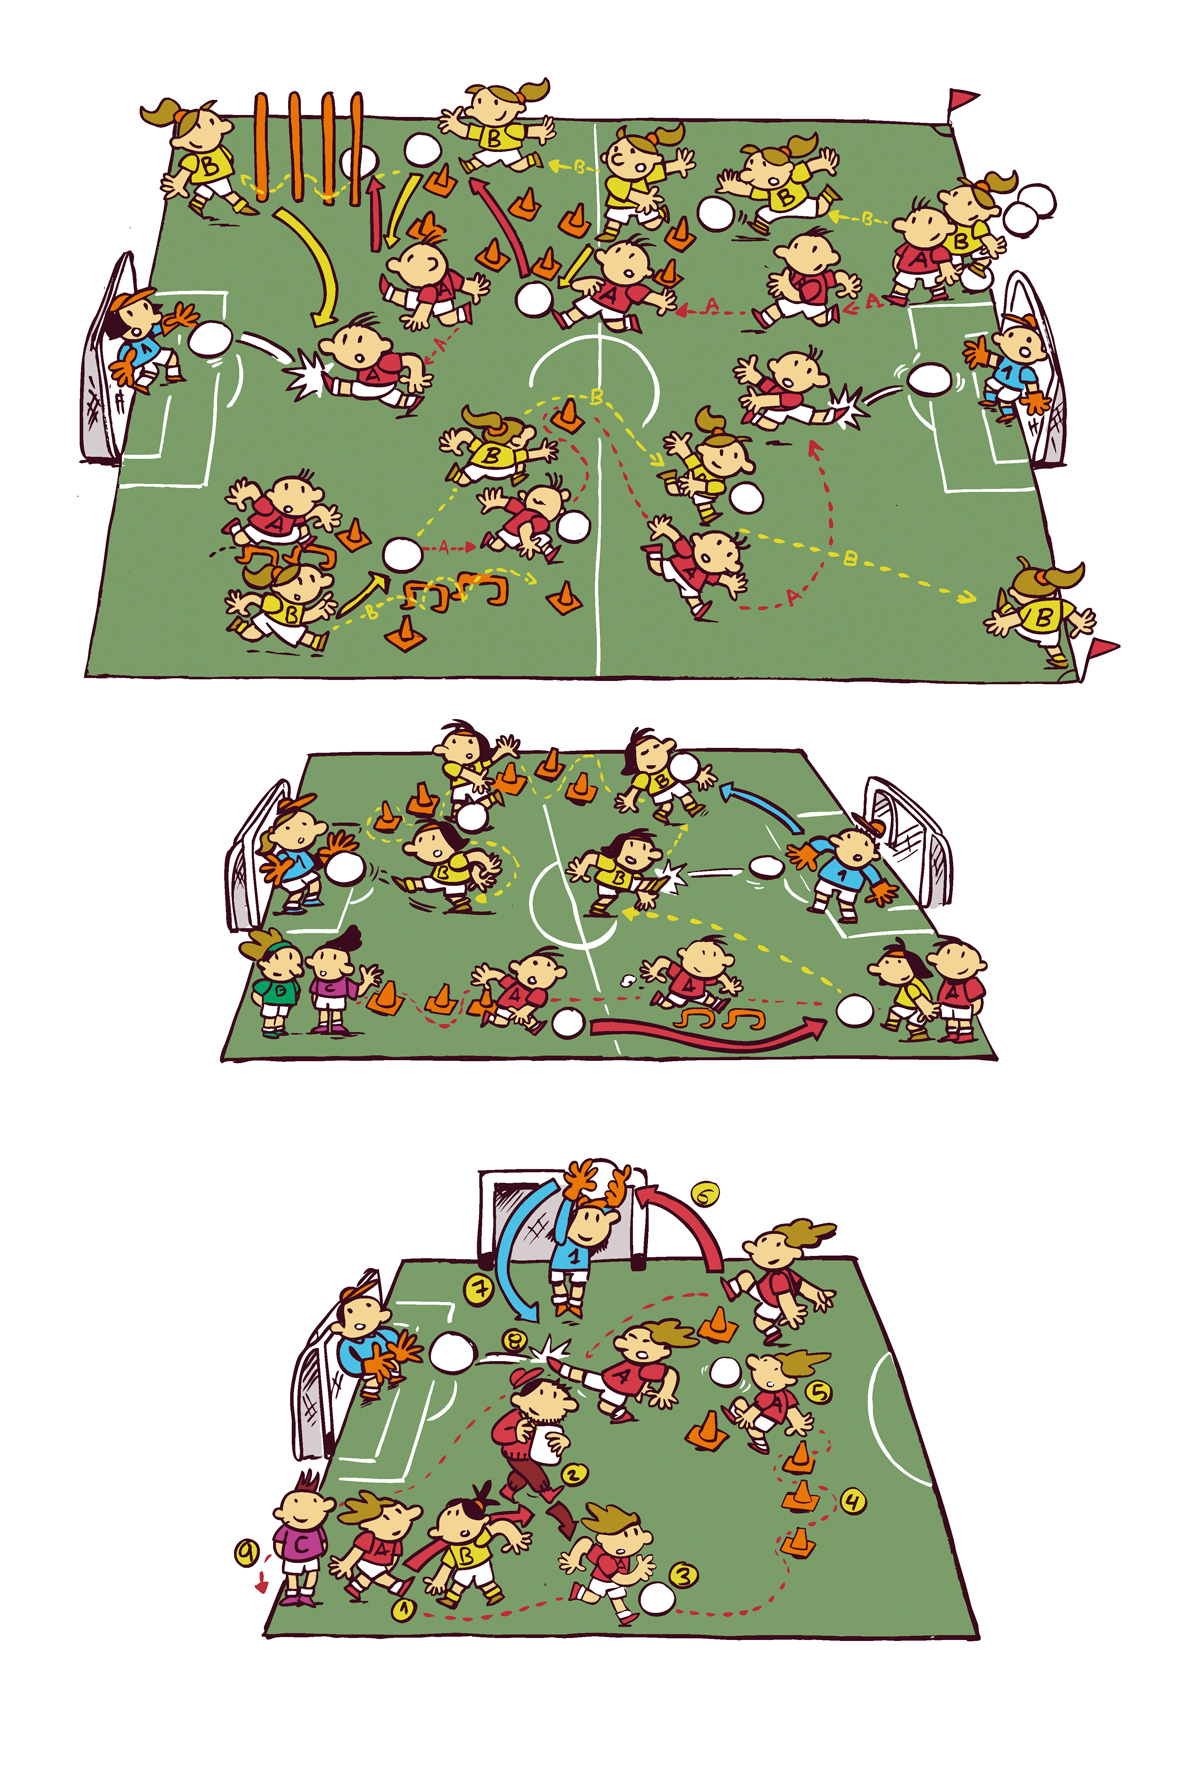 Futbol ilustracion